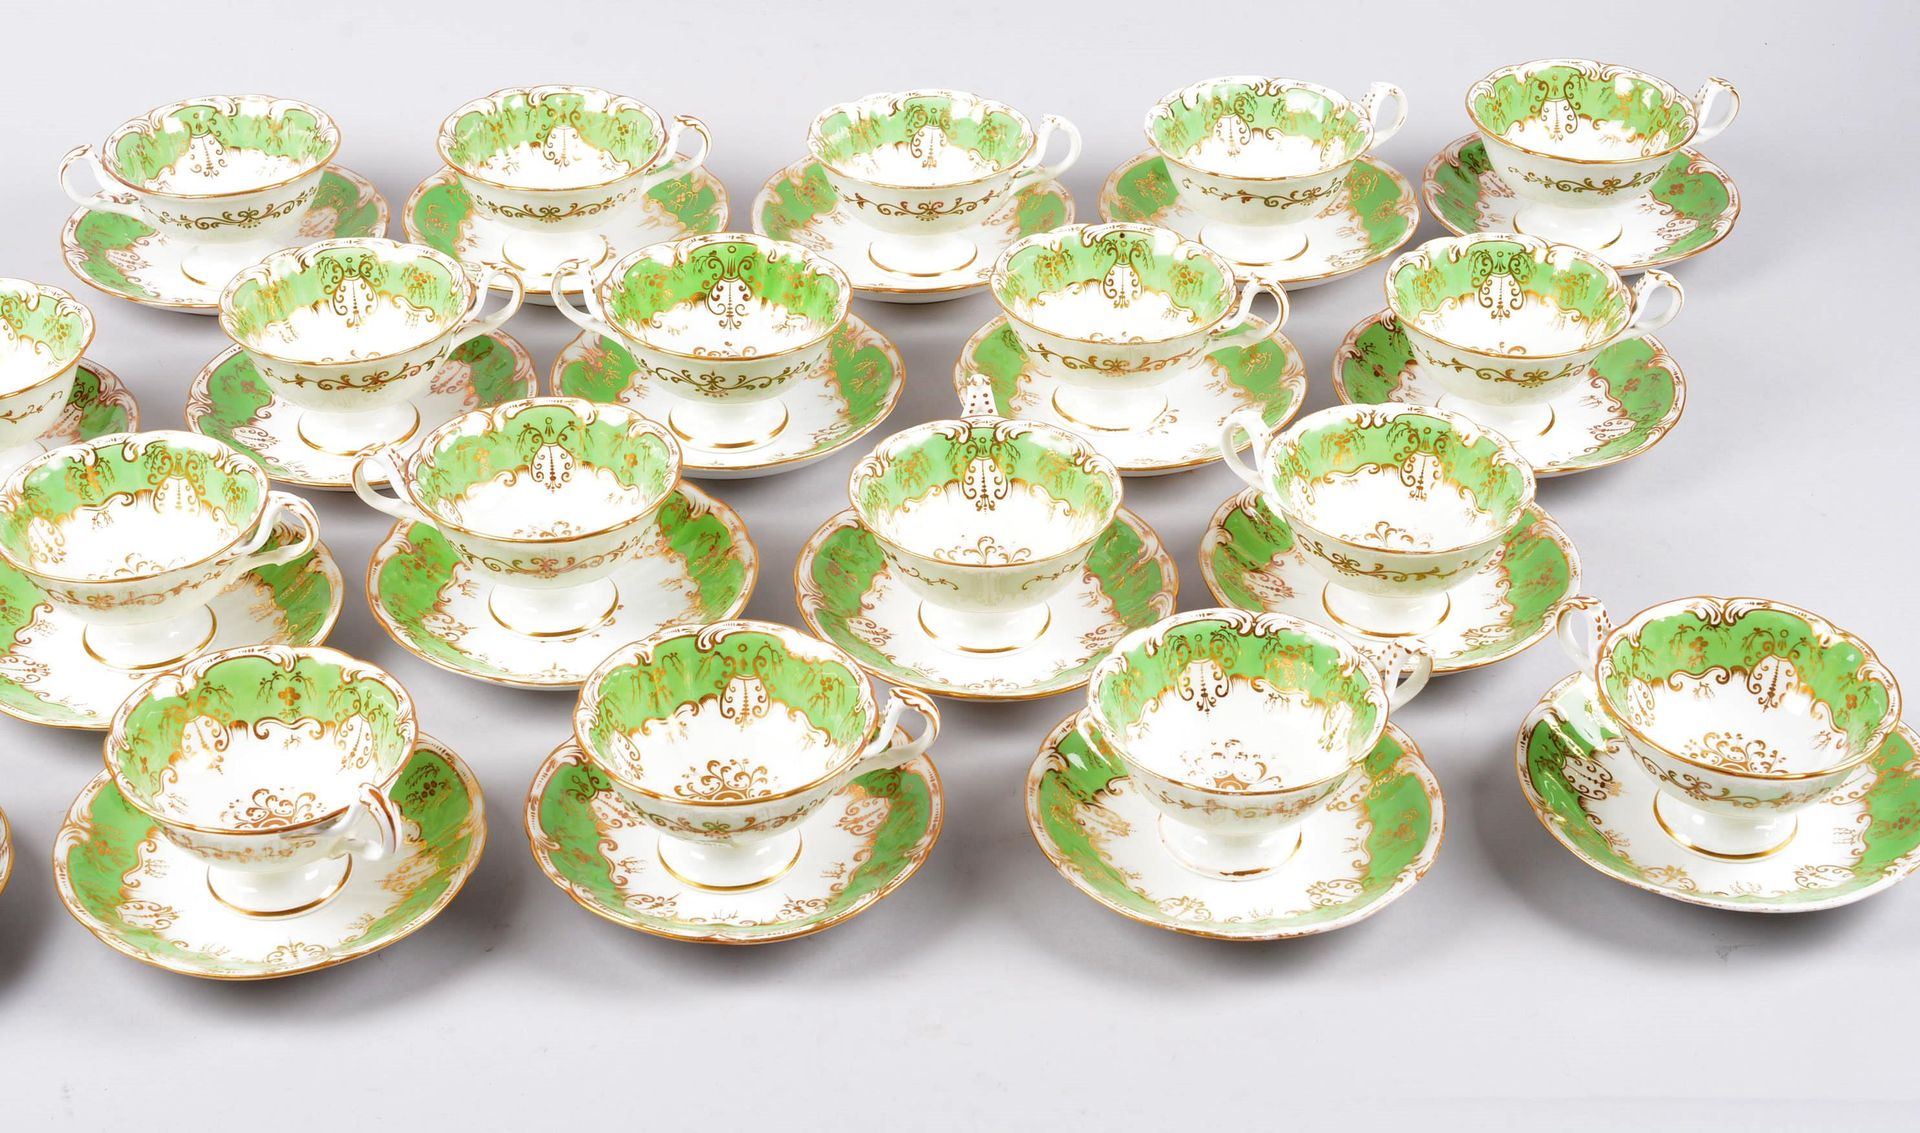 Partie de services à thé 巴黎瓷器茶具的一部分，多色的路易十五装饰。

20个杯子和20个碟子。